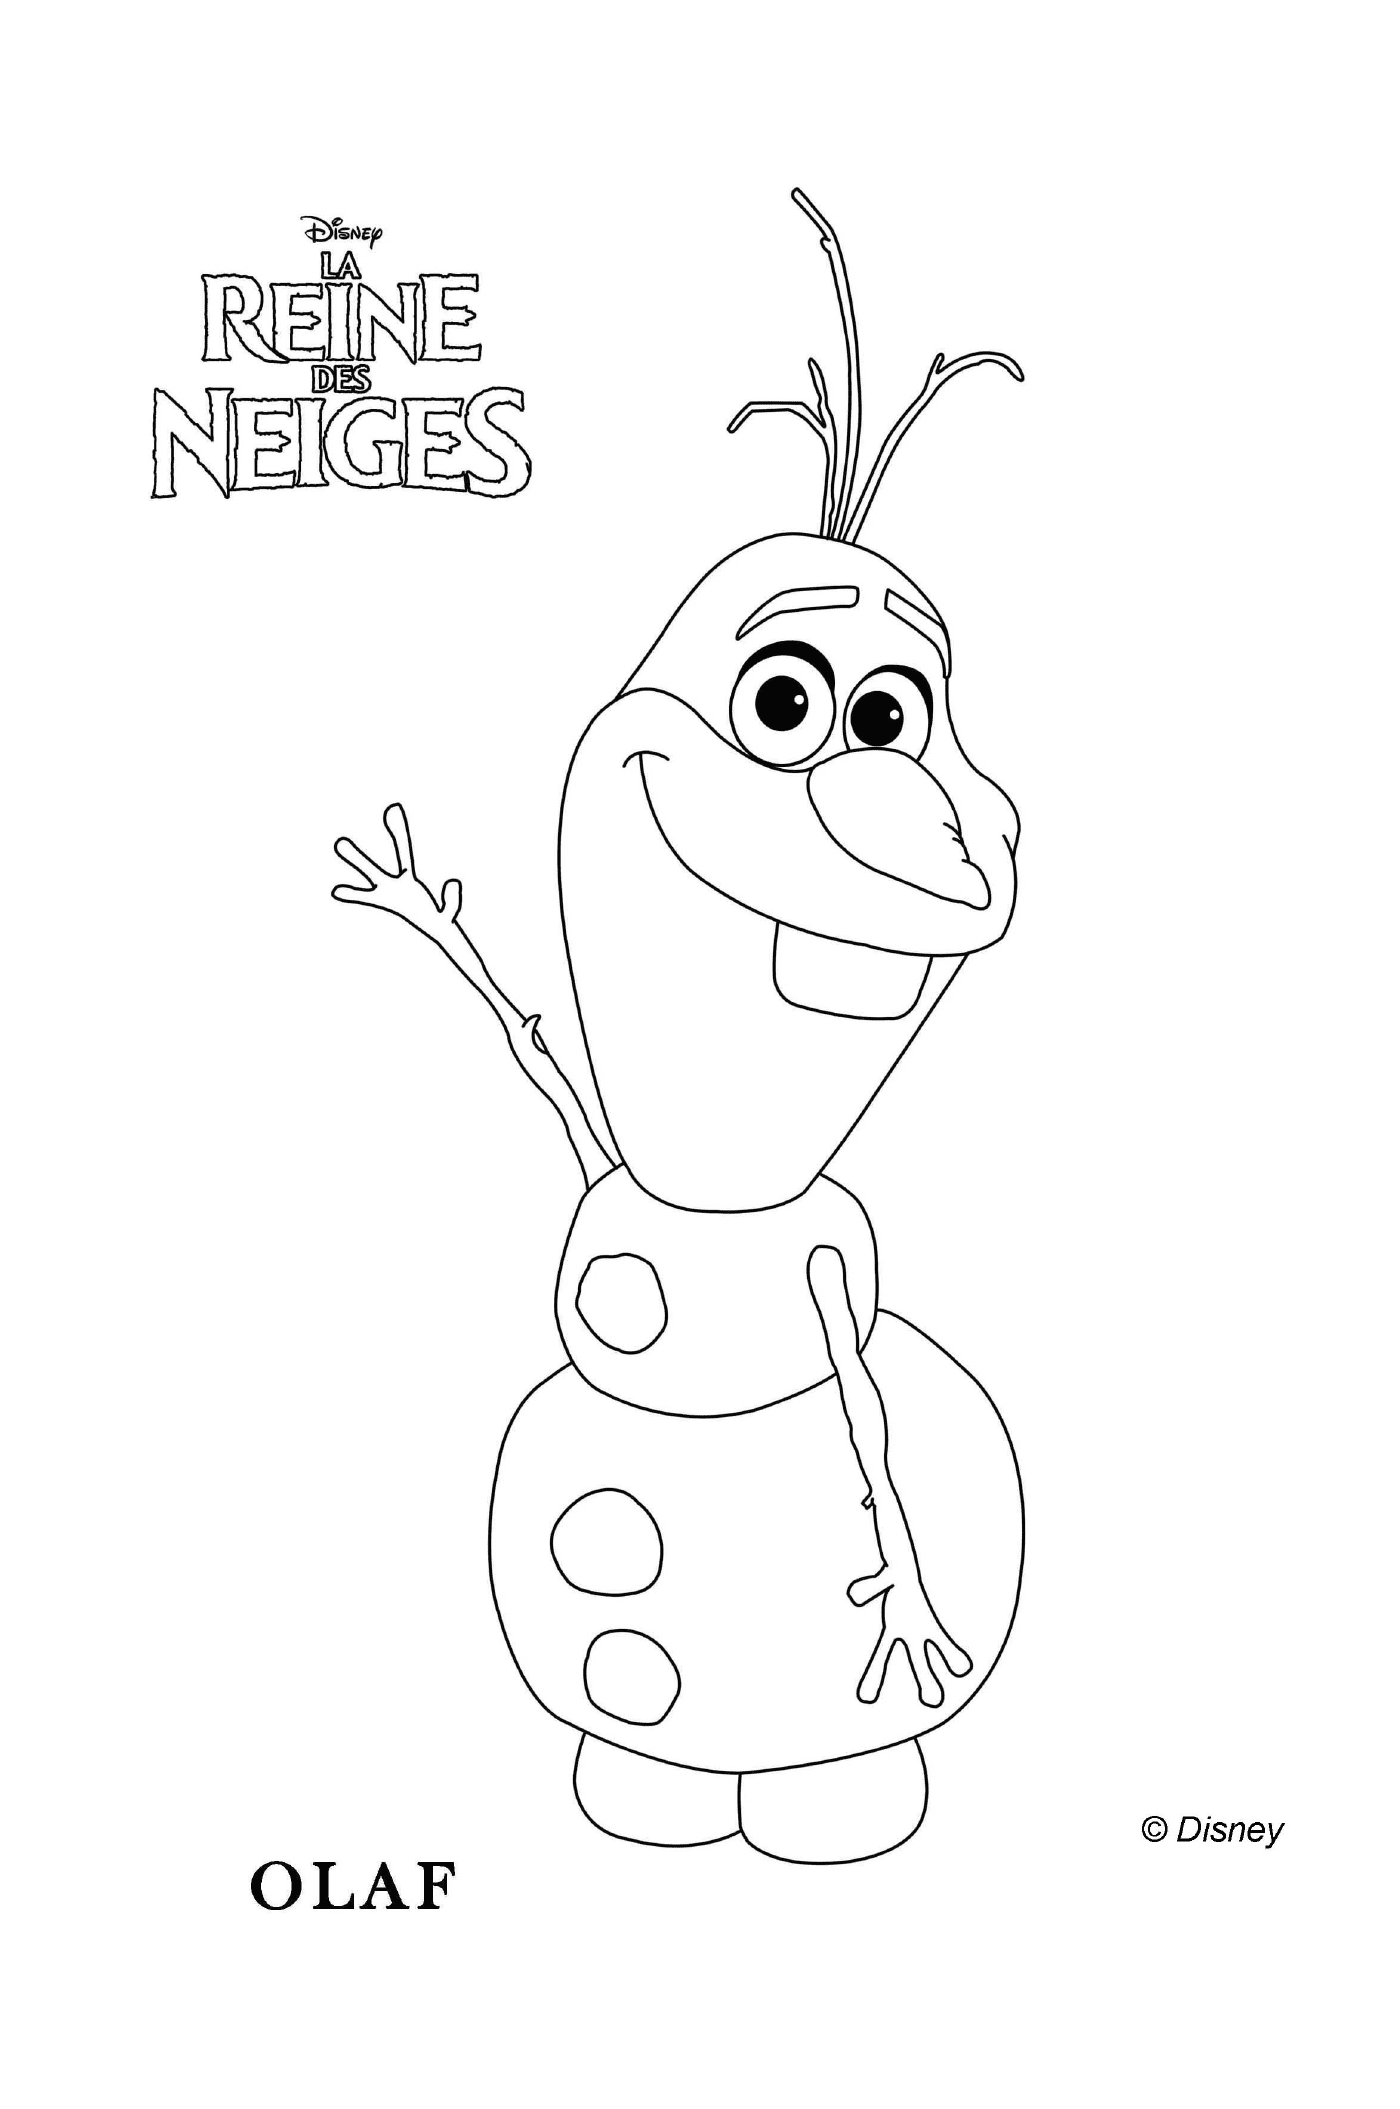  Olaf de Frozen faz uma saudação 